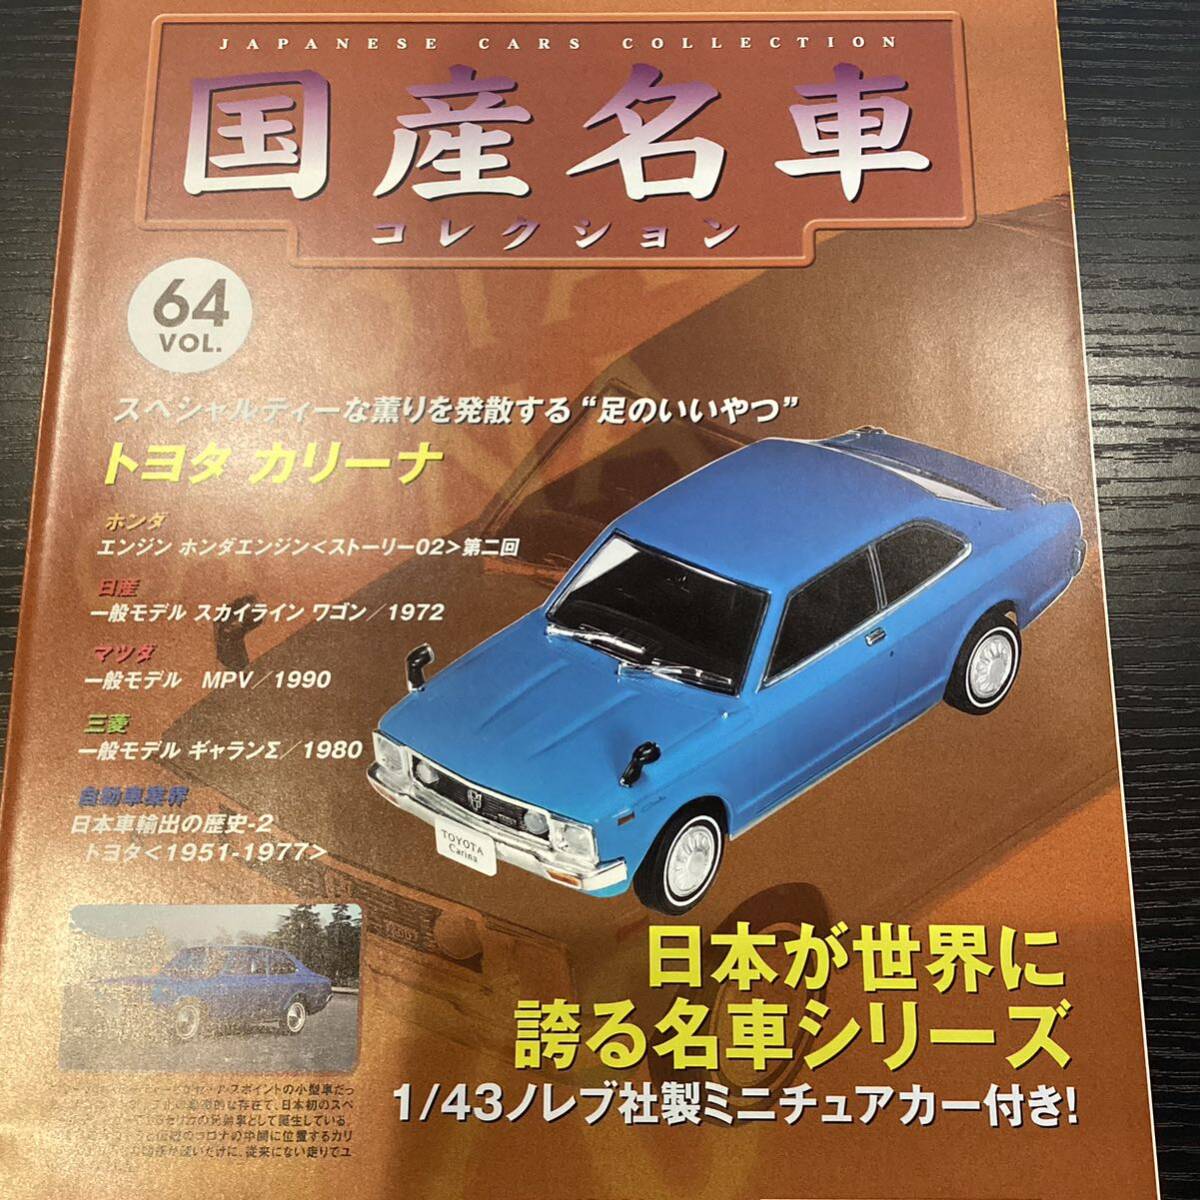 【T11809】 国産名車コレクション 1/43 スケール VOL.64 ミニチュアカー トヨタ カリーナの画像3